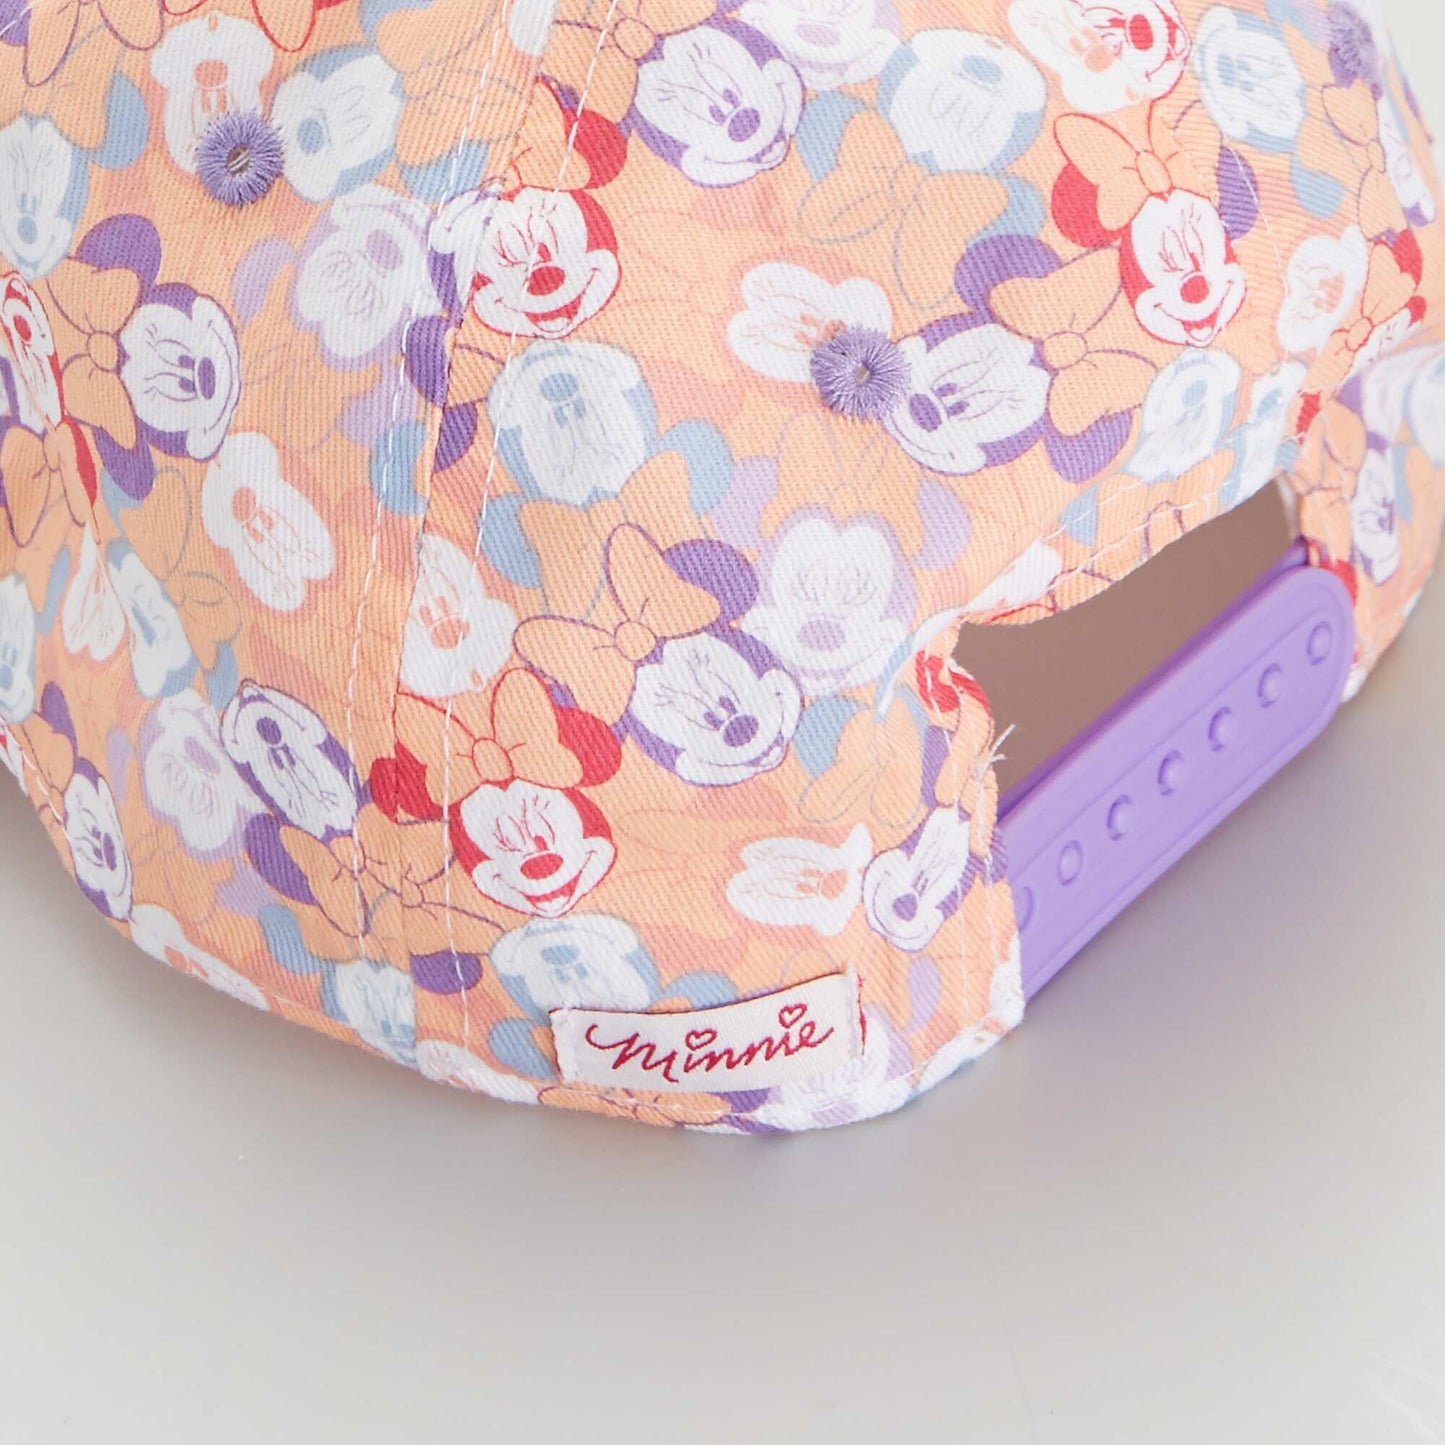 Casquette 'Minnie' de 'Disney' multicolore